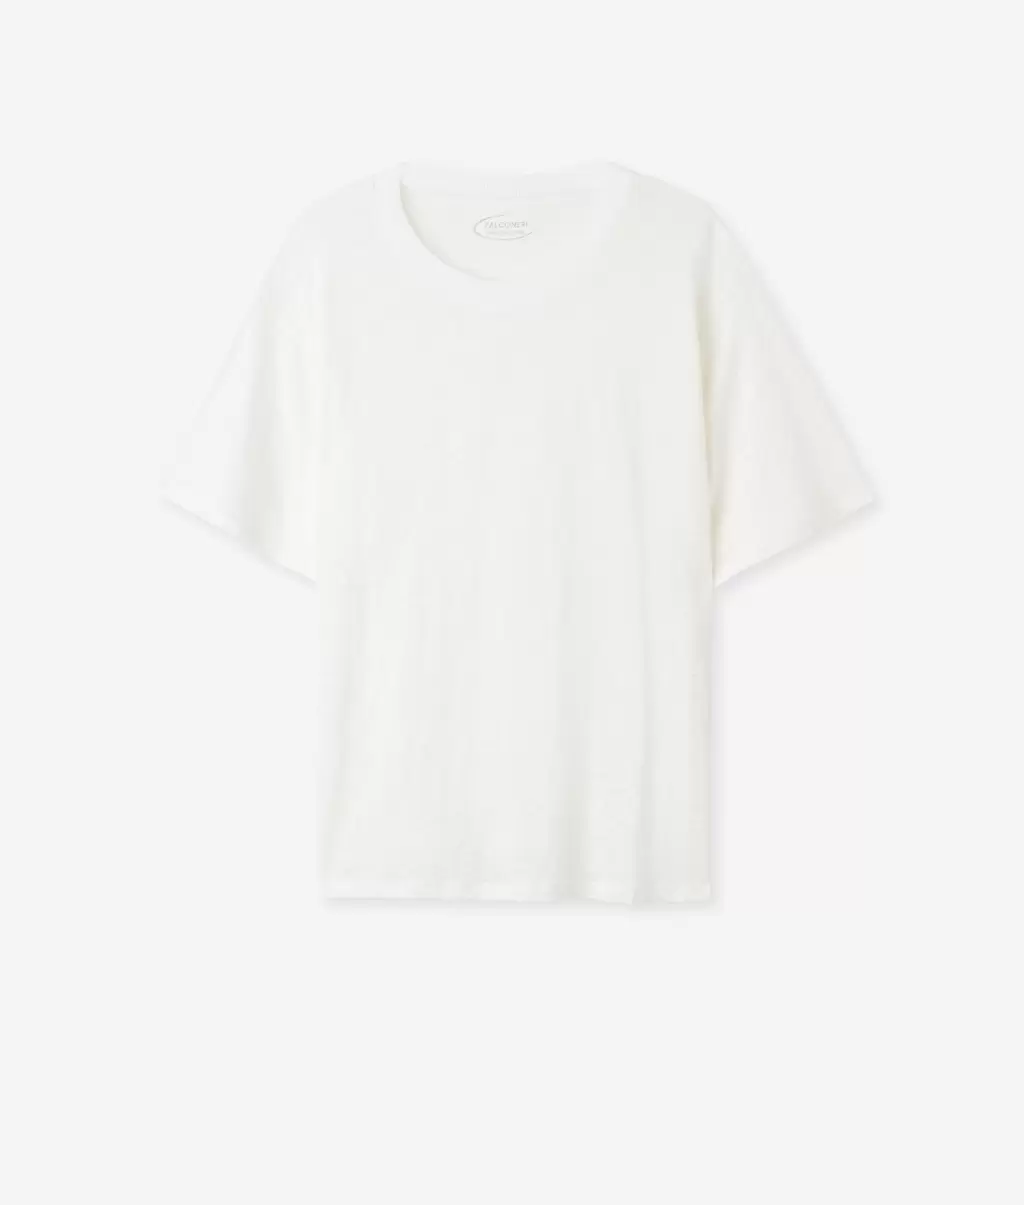 Falconeri Kobieta Topy I T-Shirty Lniany T-Shirt Z Okrągłym Dekoltem I Dzianinowym Obszyciem White - 4